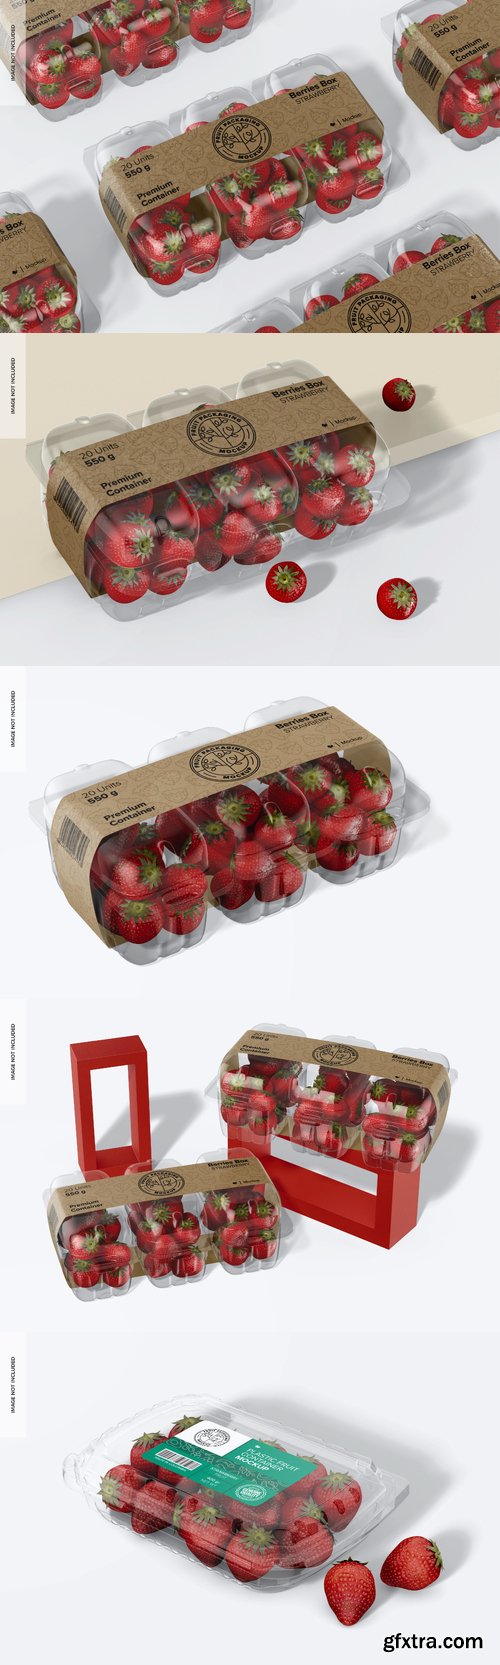 Berries box mockup